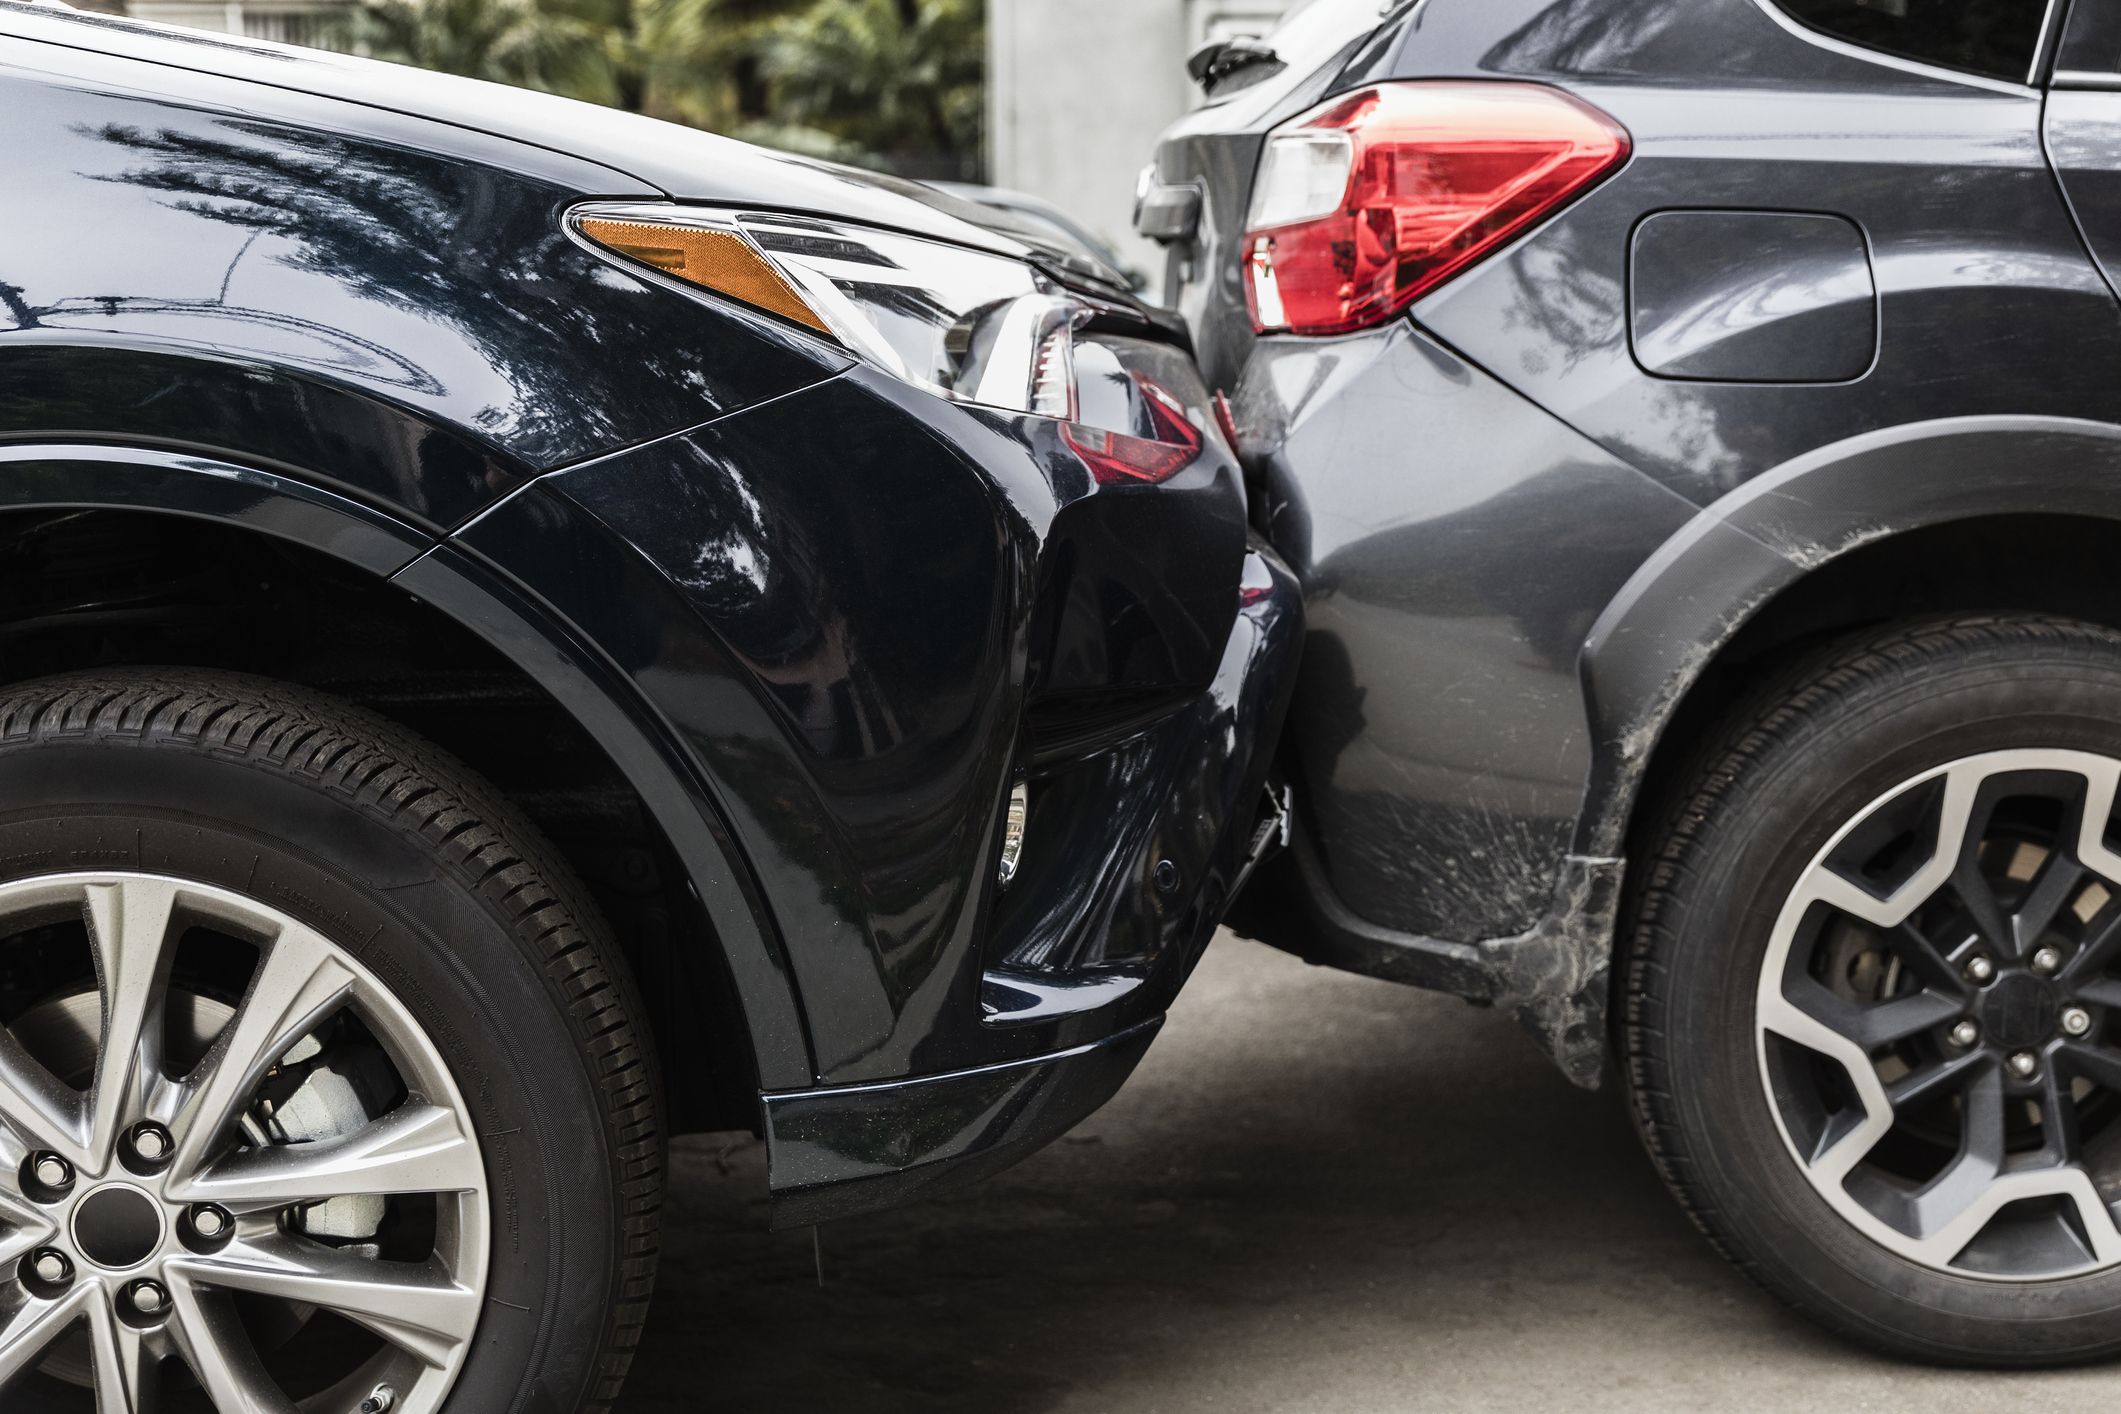 suvs money accident cheaper auto insurance